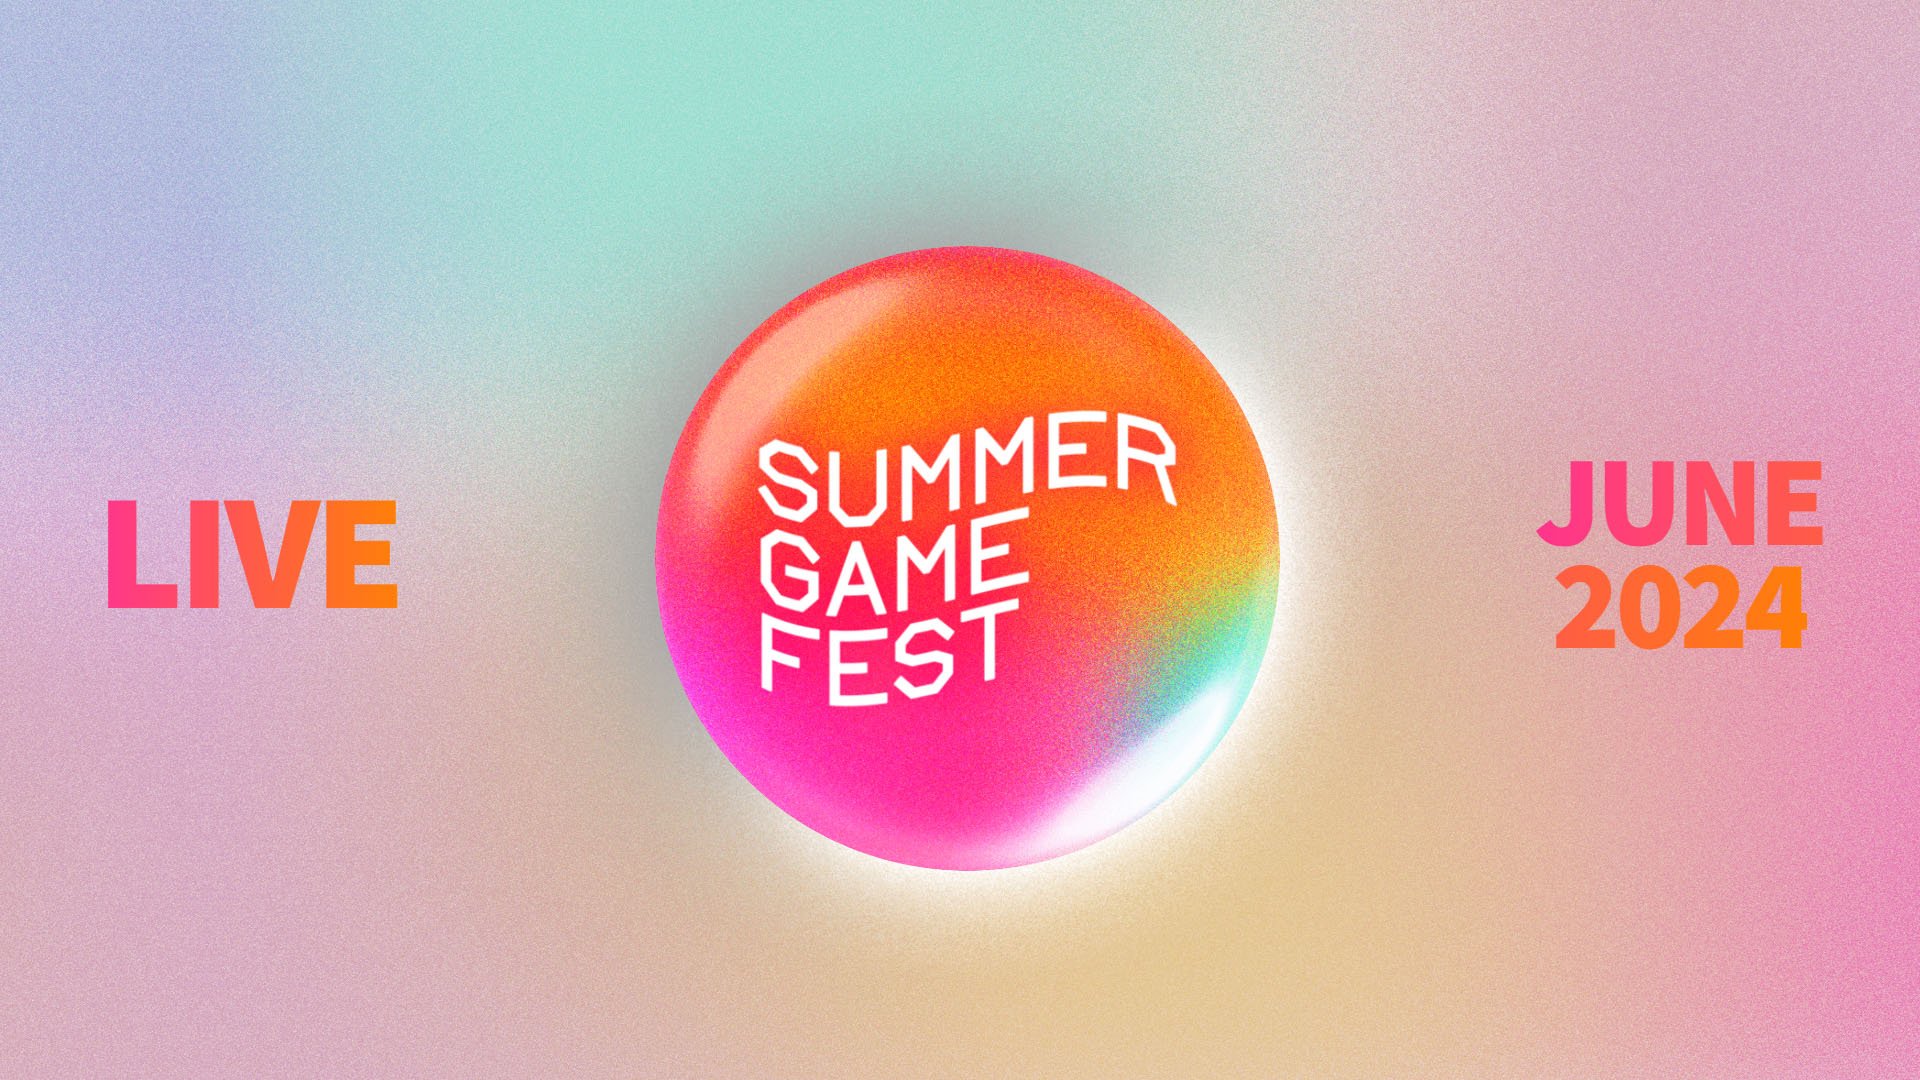 Das Showcase des Summer Game Fest 2024 ist für den 7. Juni geplant